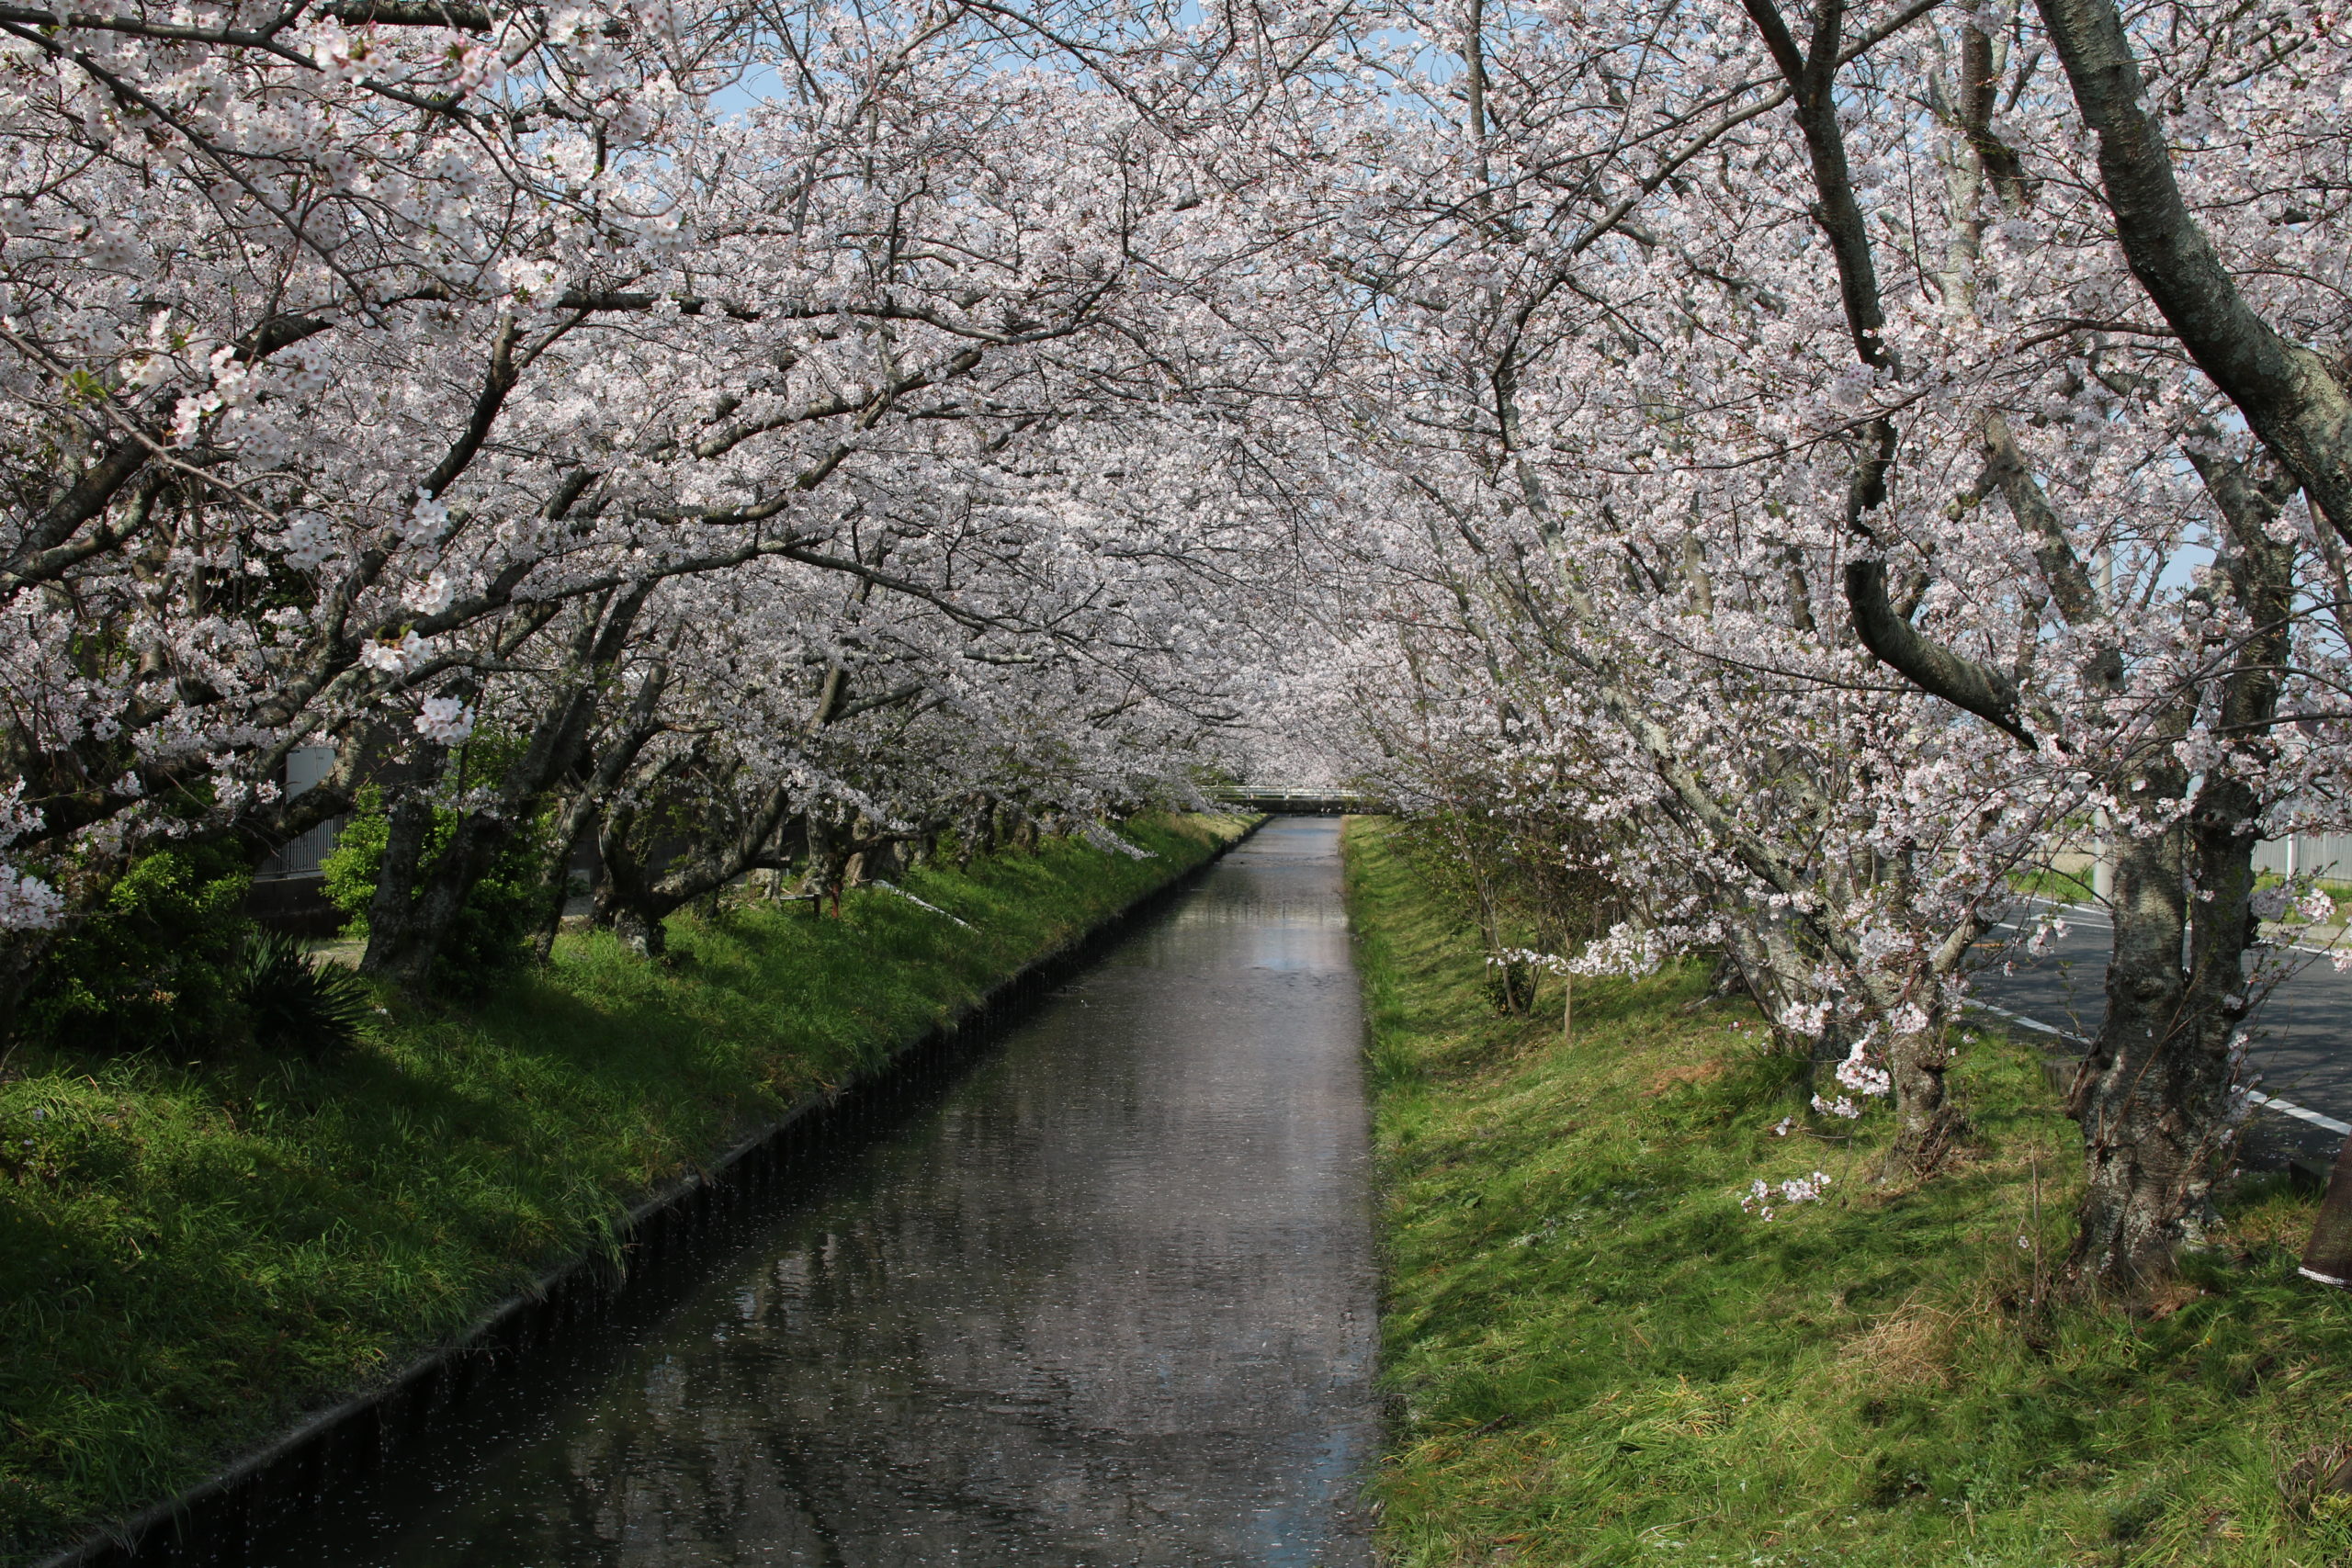 もうじき桜が咲く時期なので、今年も焼津の桜並木を愛でに行きたい